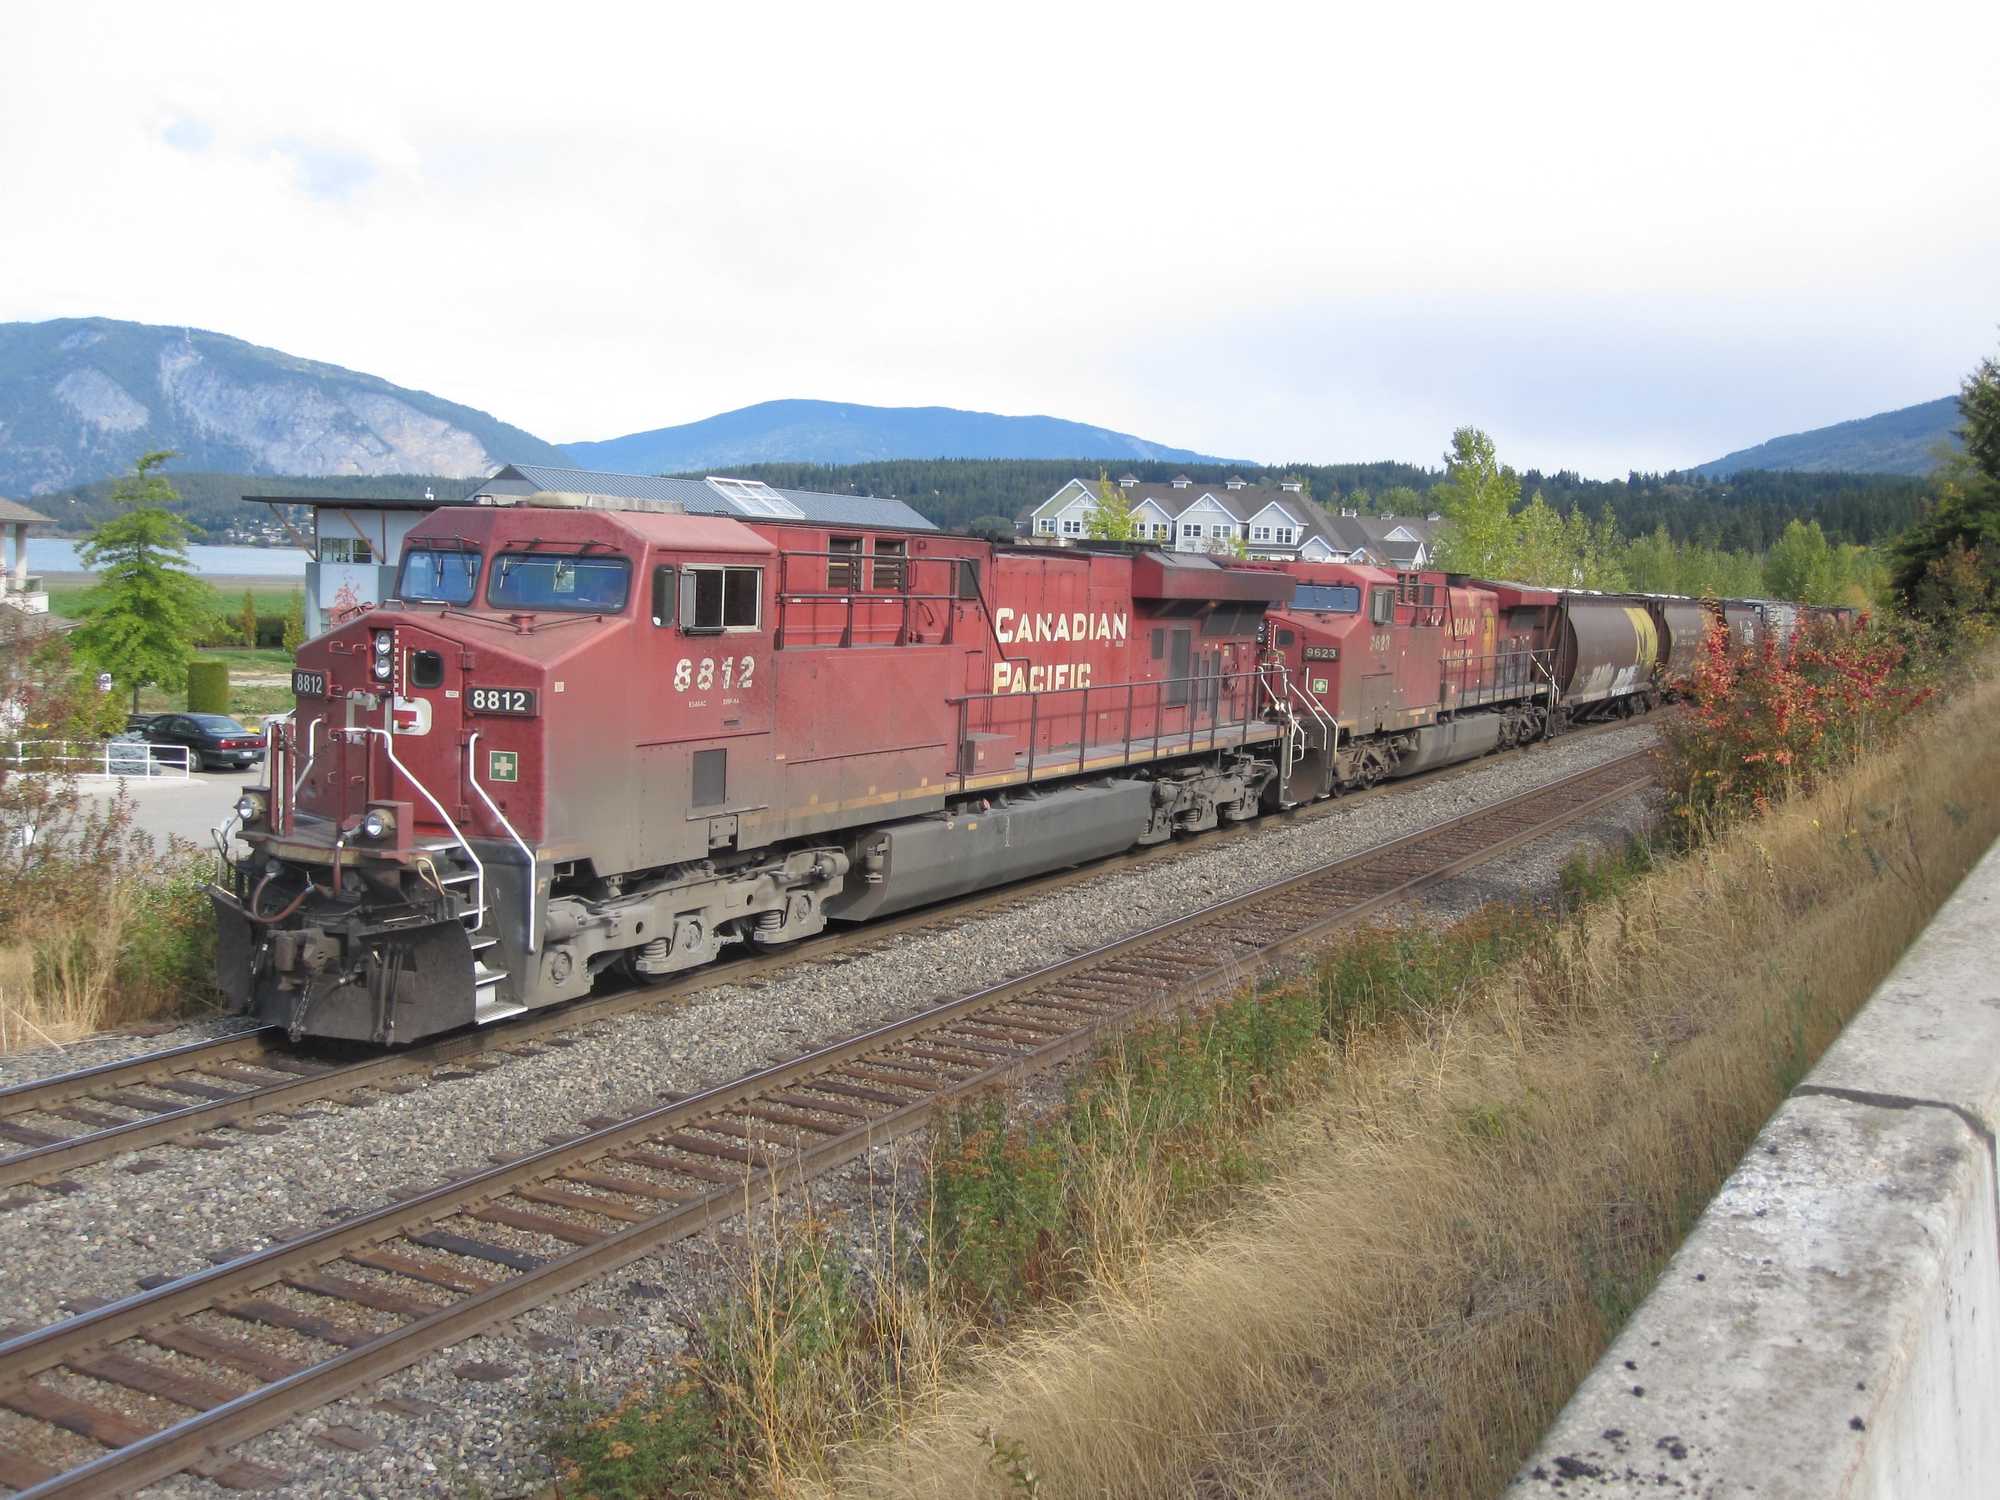 Zwei Zugloks, eine Mittellok und eine Schlusslok – nicht selten ist das die vorherrschende Zugformation bei den Güterzügen auf den steigungs- und windungsreichen Strecken durch die kanadischen Rocky Mountains.